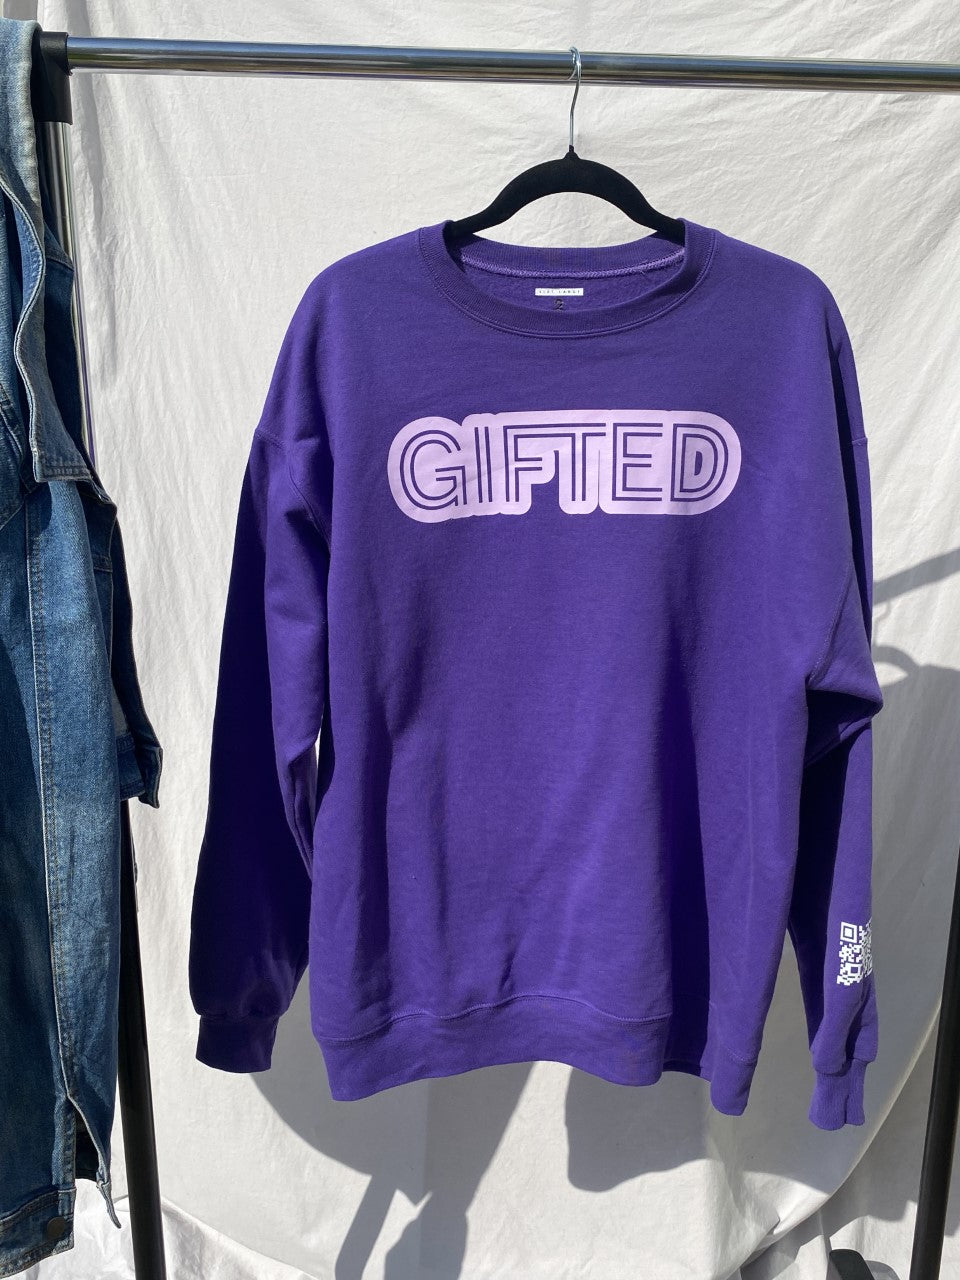 "Gifted" Sweatshirt